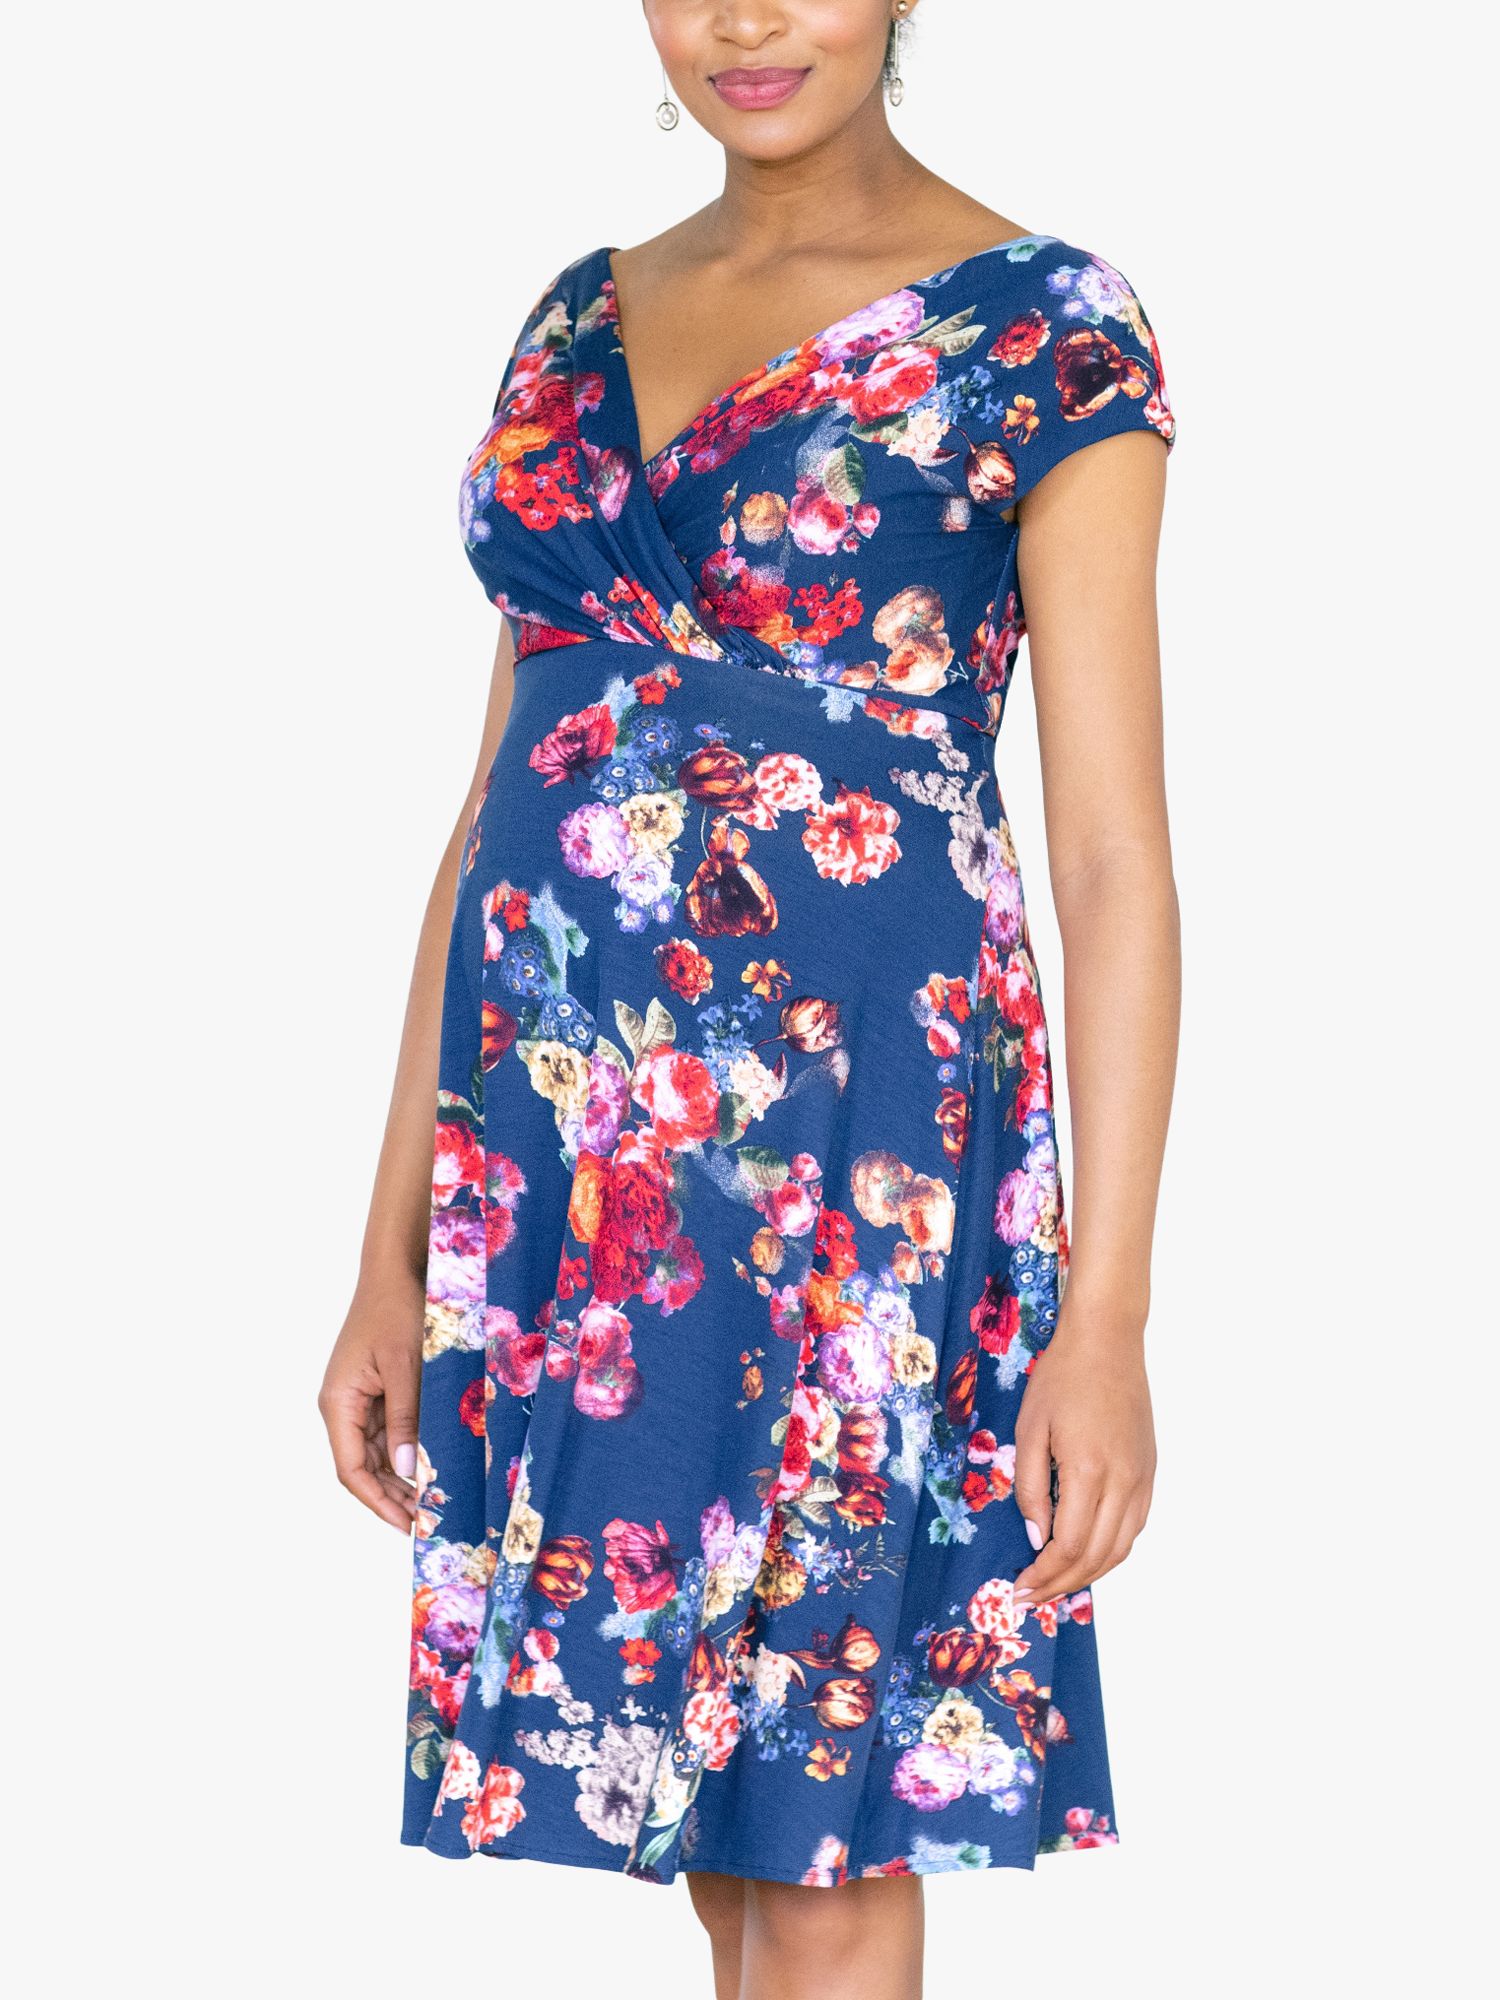 Tiffany Rose Alessandra Midnight Garden Print Maternity Dress, Blue/Multi, 6-8